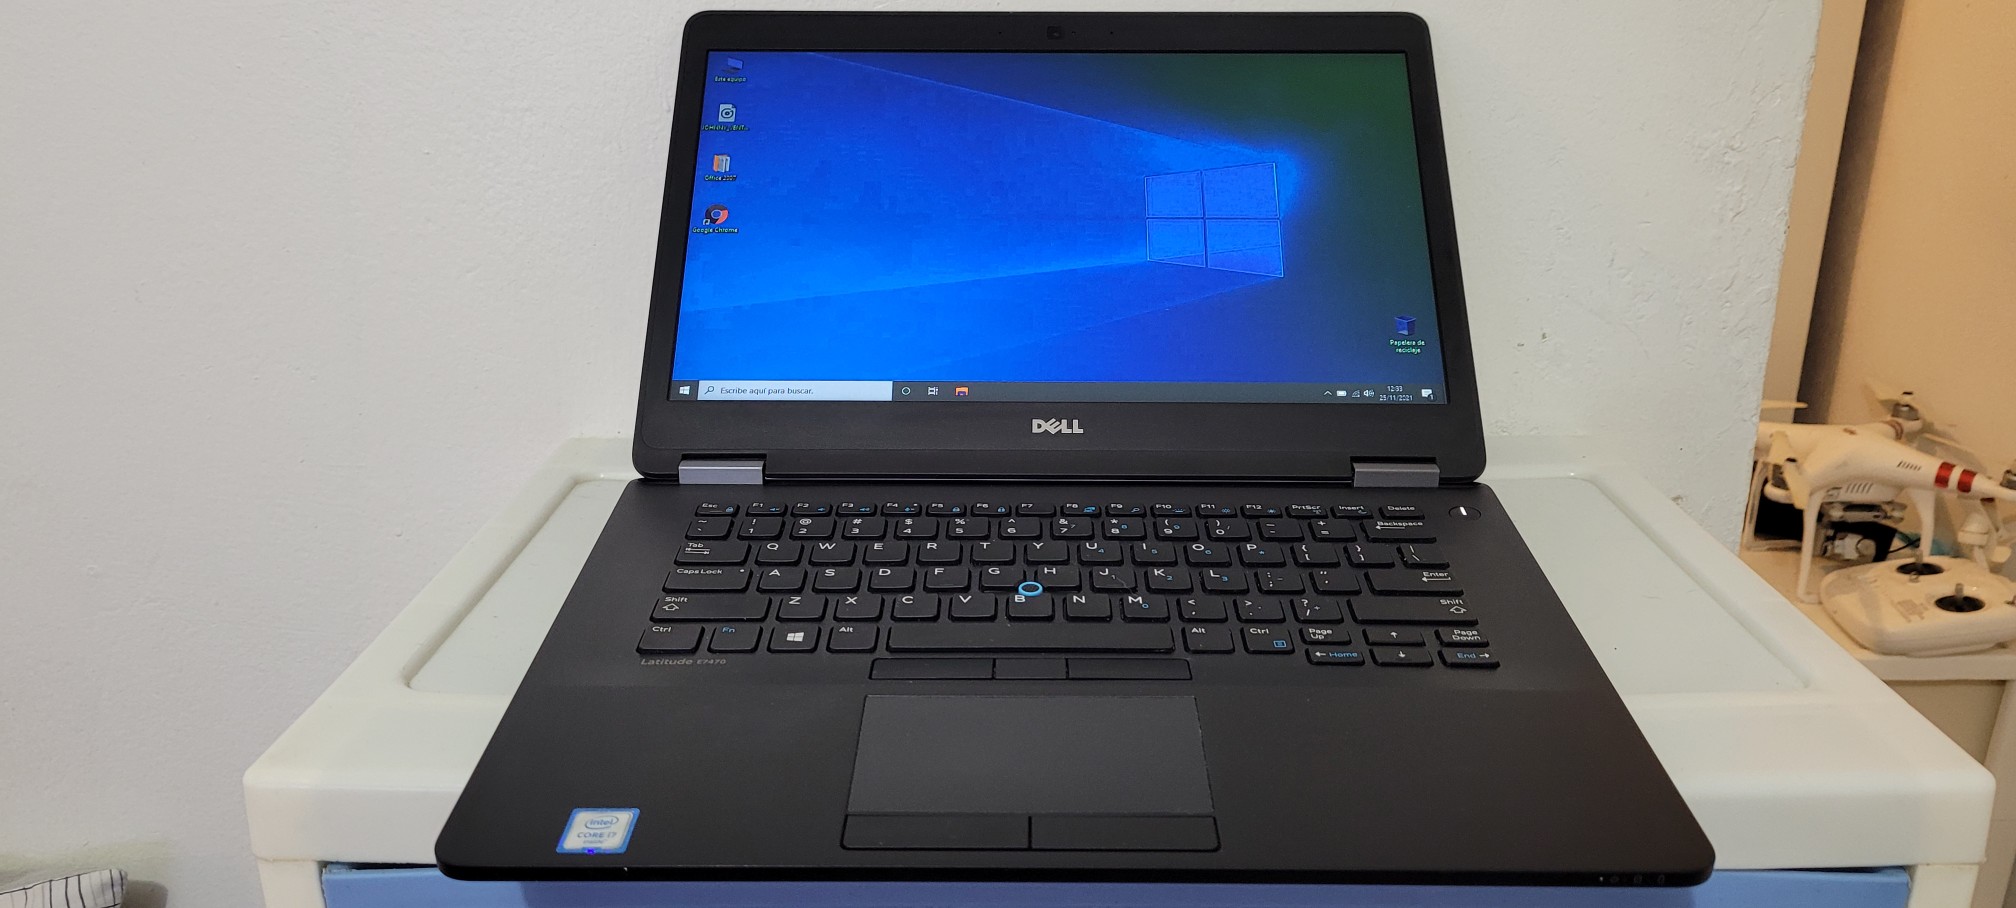 computadoras y laptops - Dell 7480 14 Pulg Core i5 7ma Gen Ram 8gb ddr4 Disco 128gb SSD Full 1080p 0